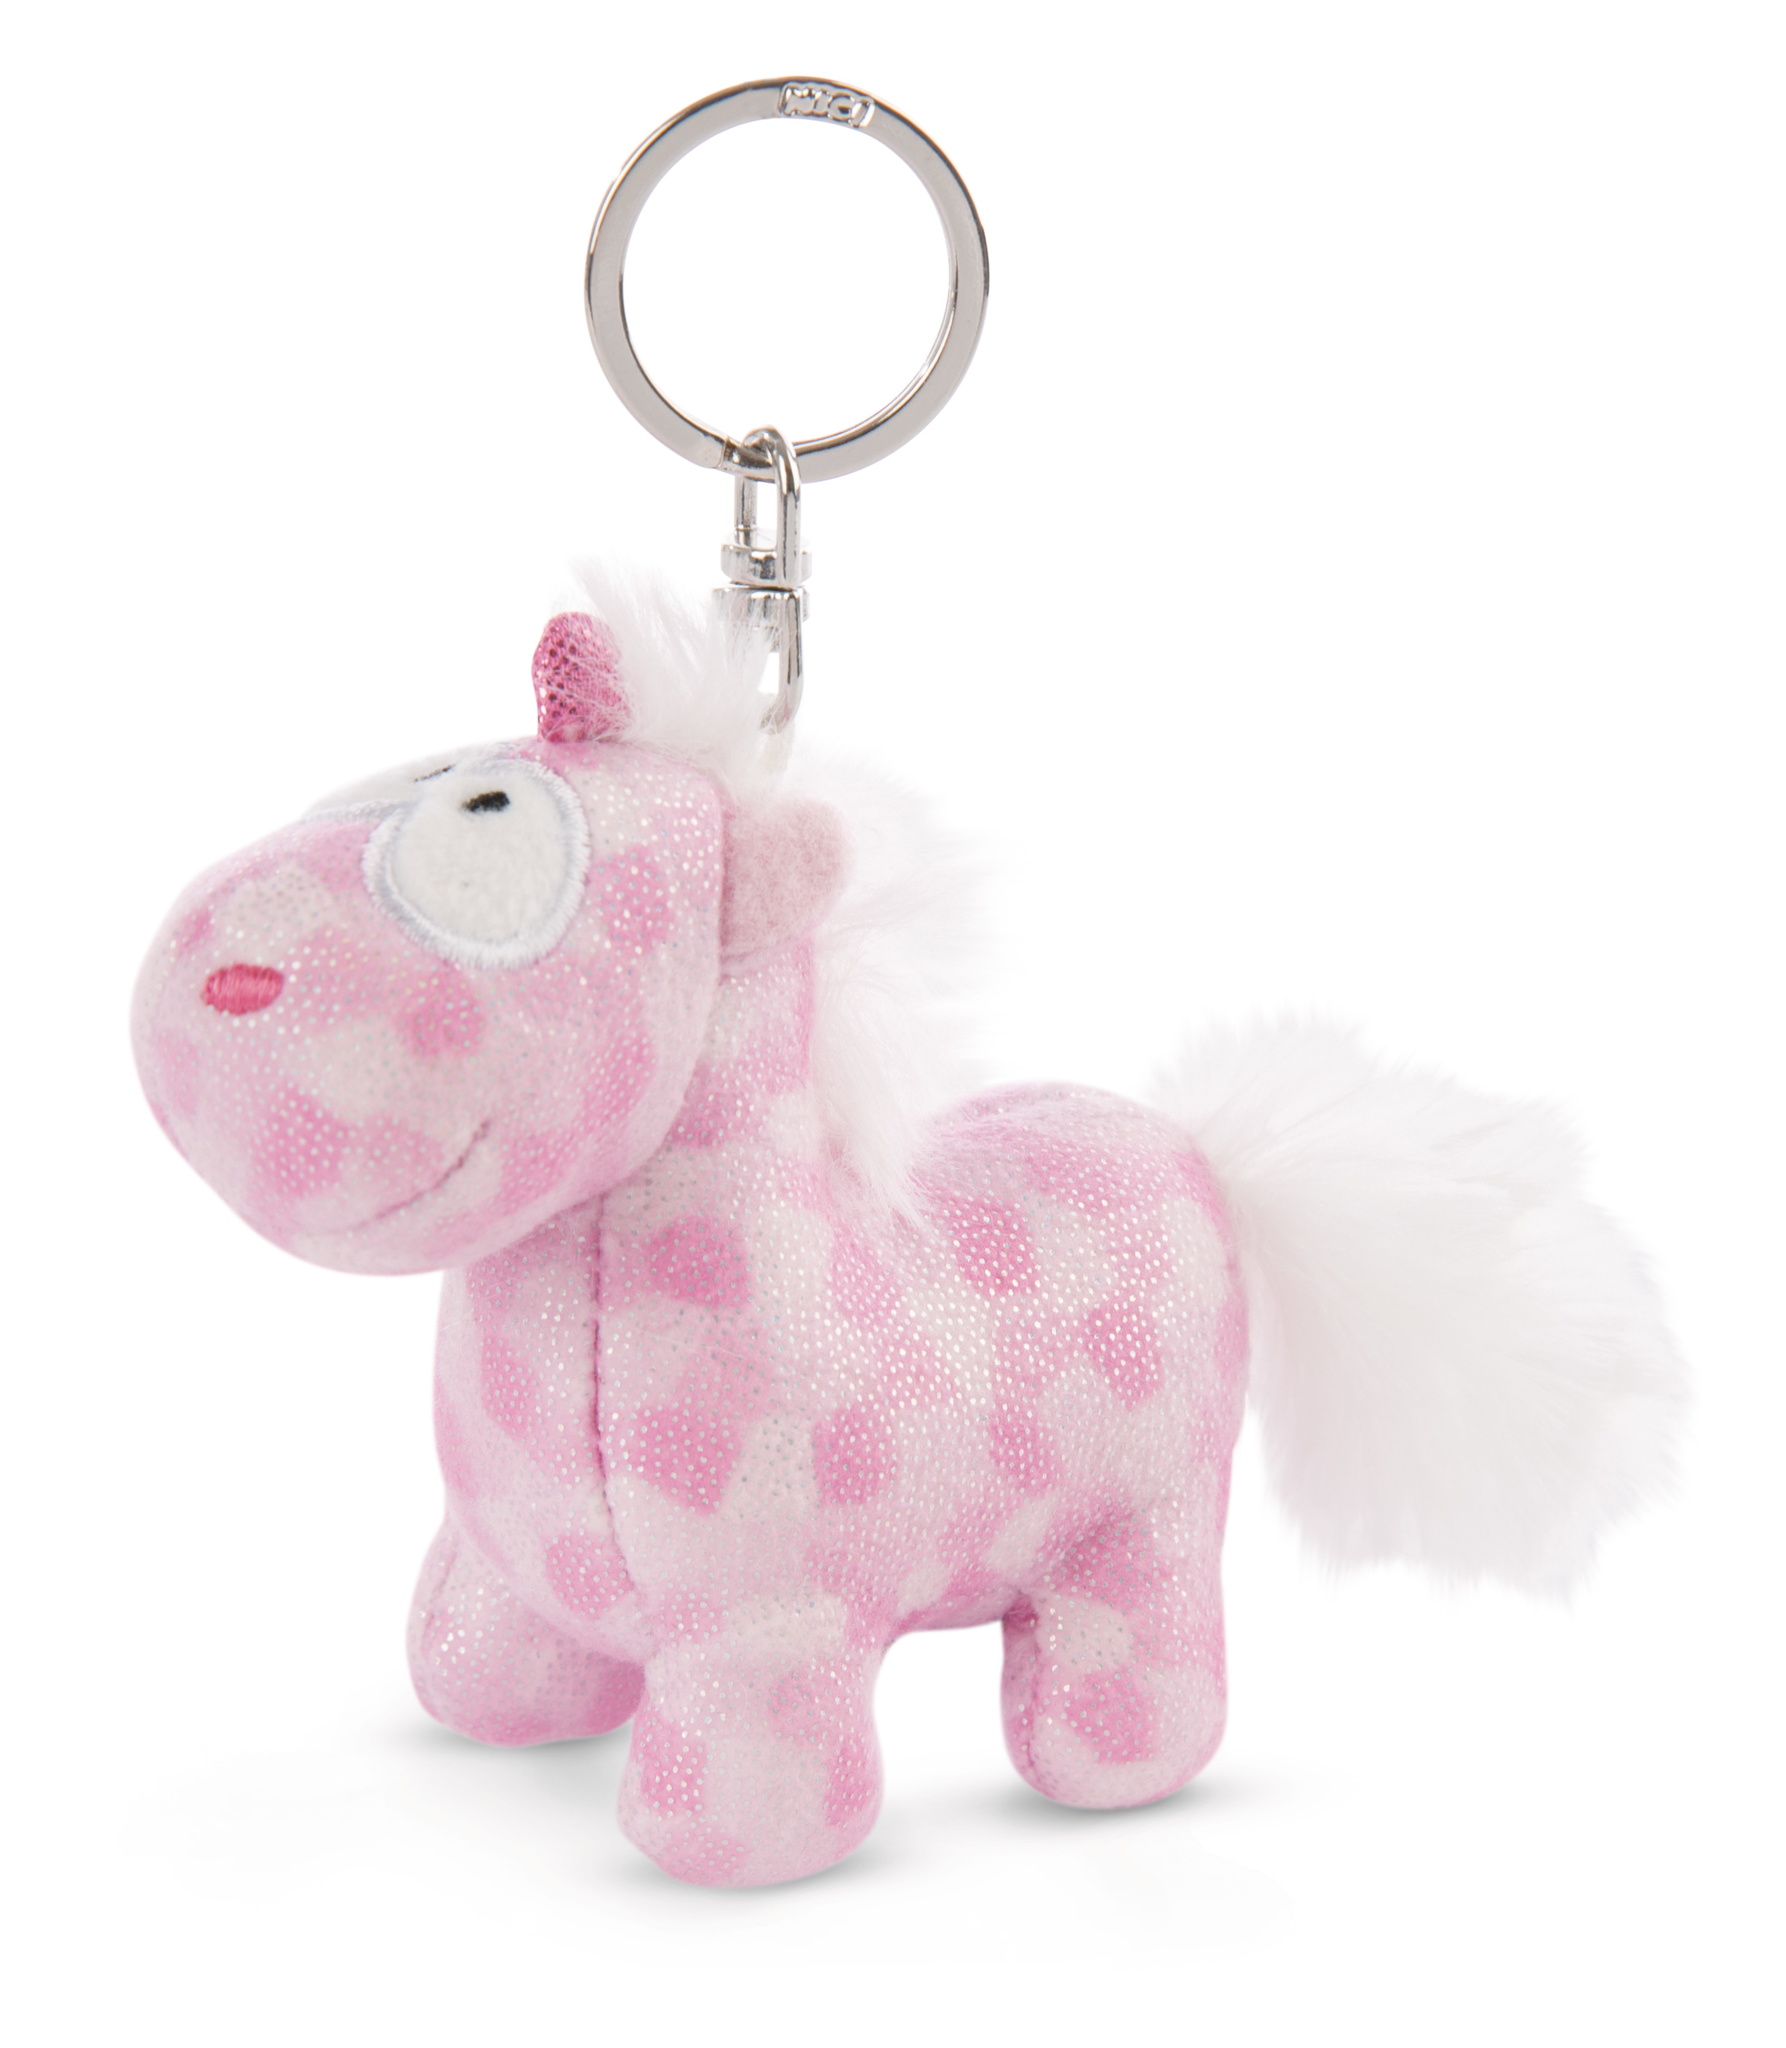 Schlüsselanhänger Einhorn Pferd mit Einkaufs-Chip pink rosa NEU 